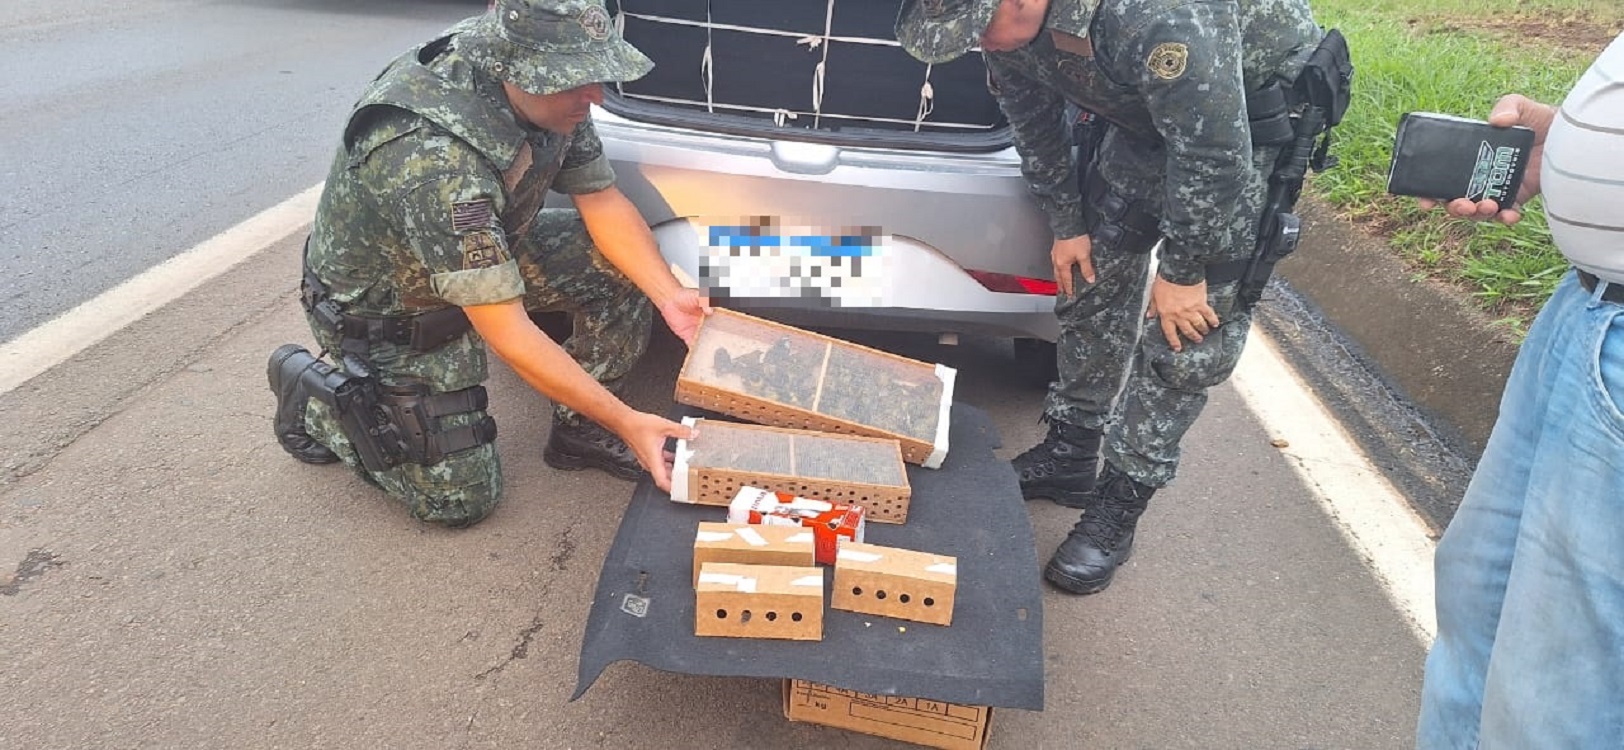 Os animais estavam presos em caixas de madeira e de papelão — Foto: Polícia Militar Ambiental/Divulgação